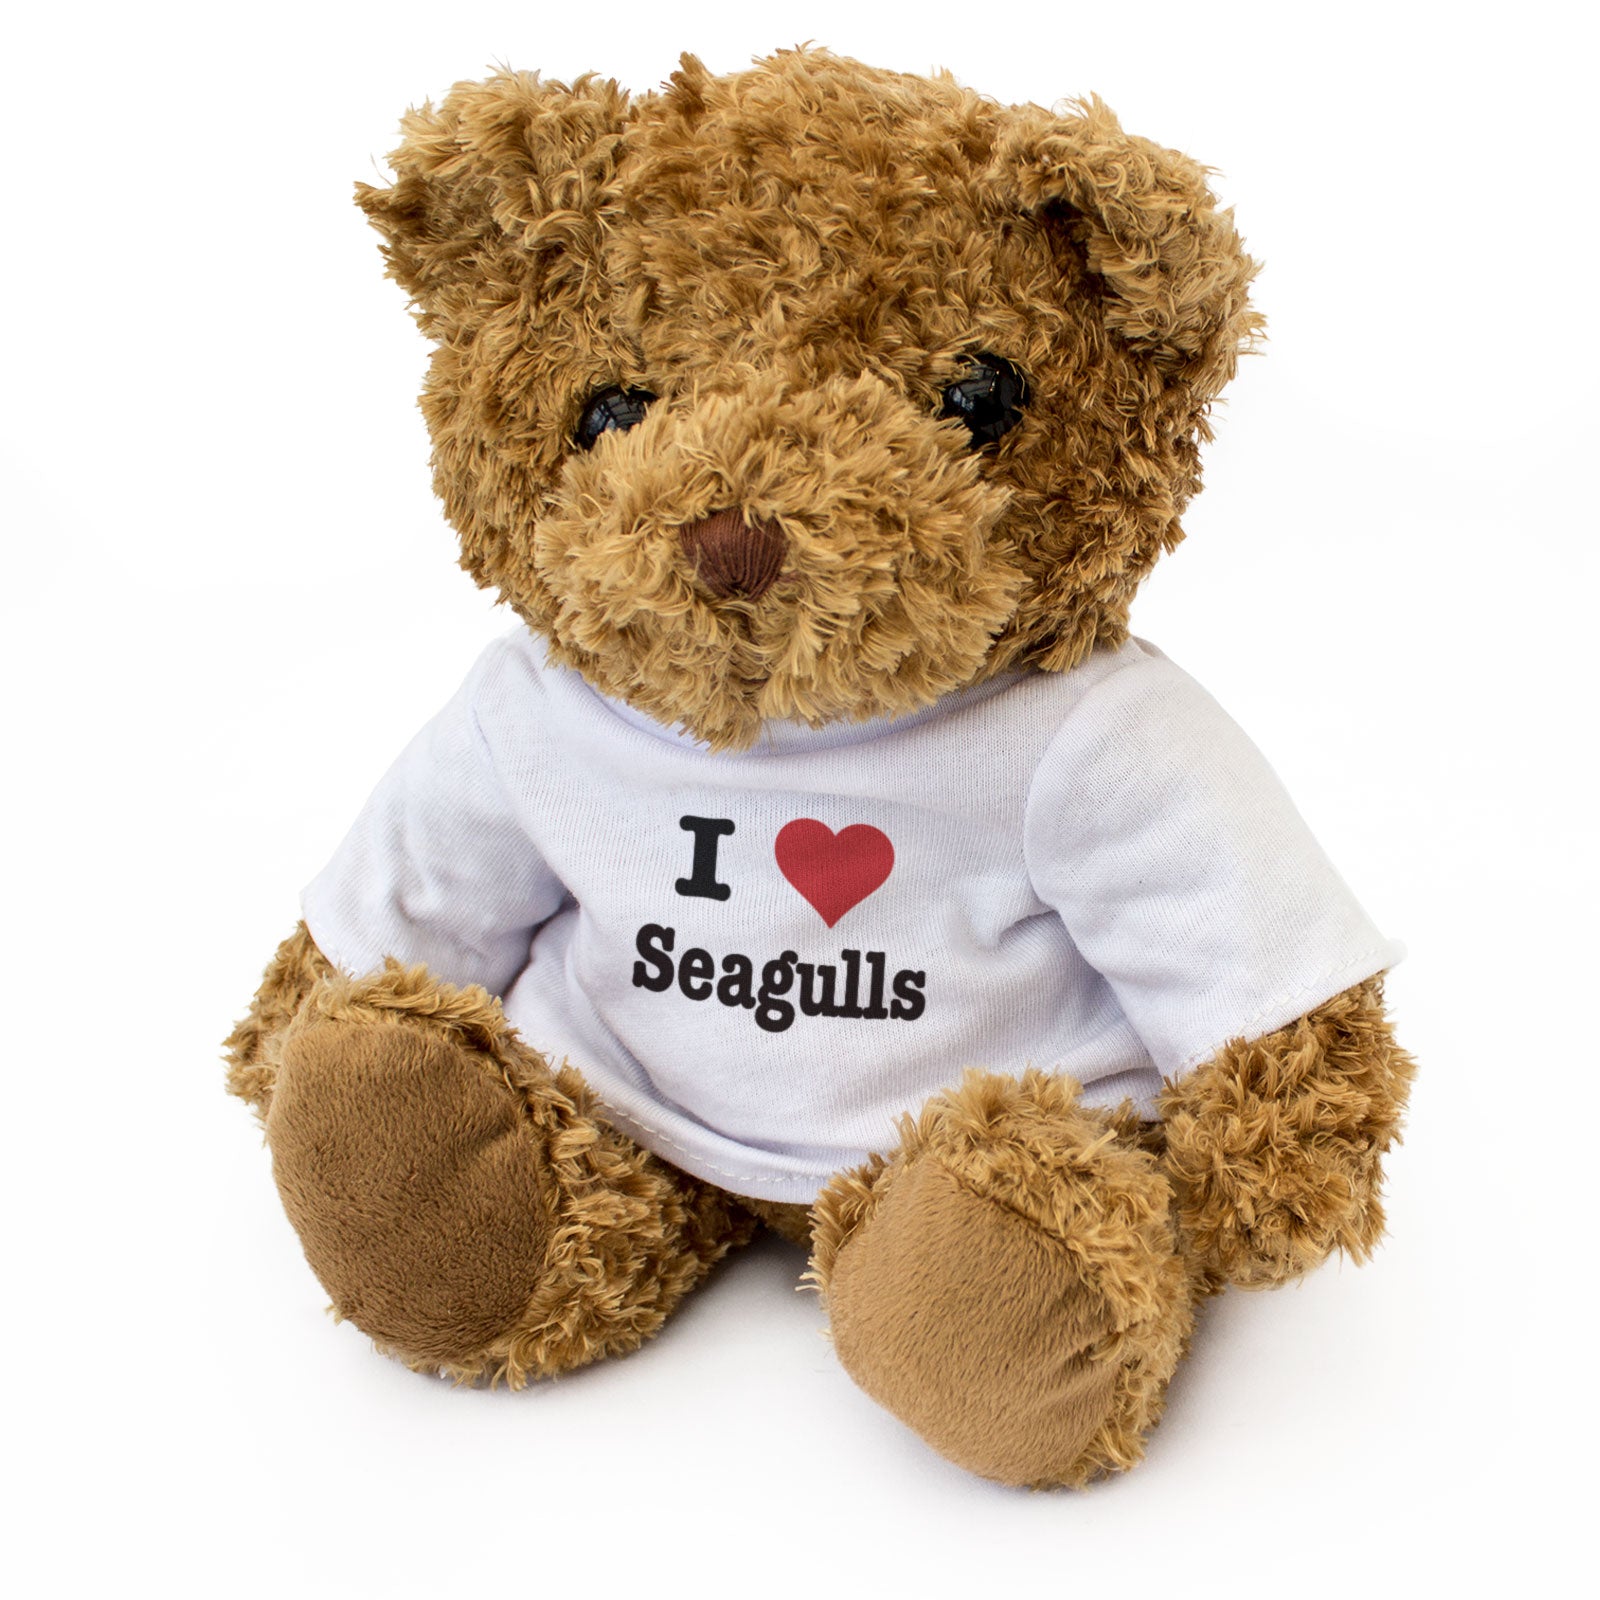 I Love Seagulls - Teddy Bear